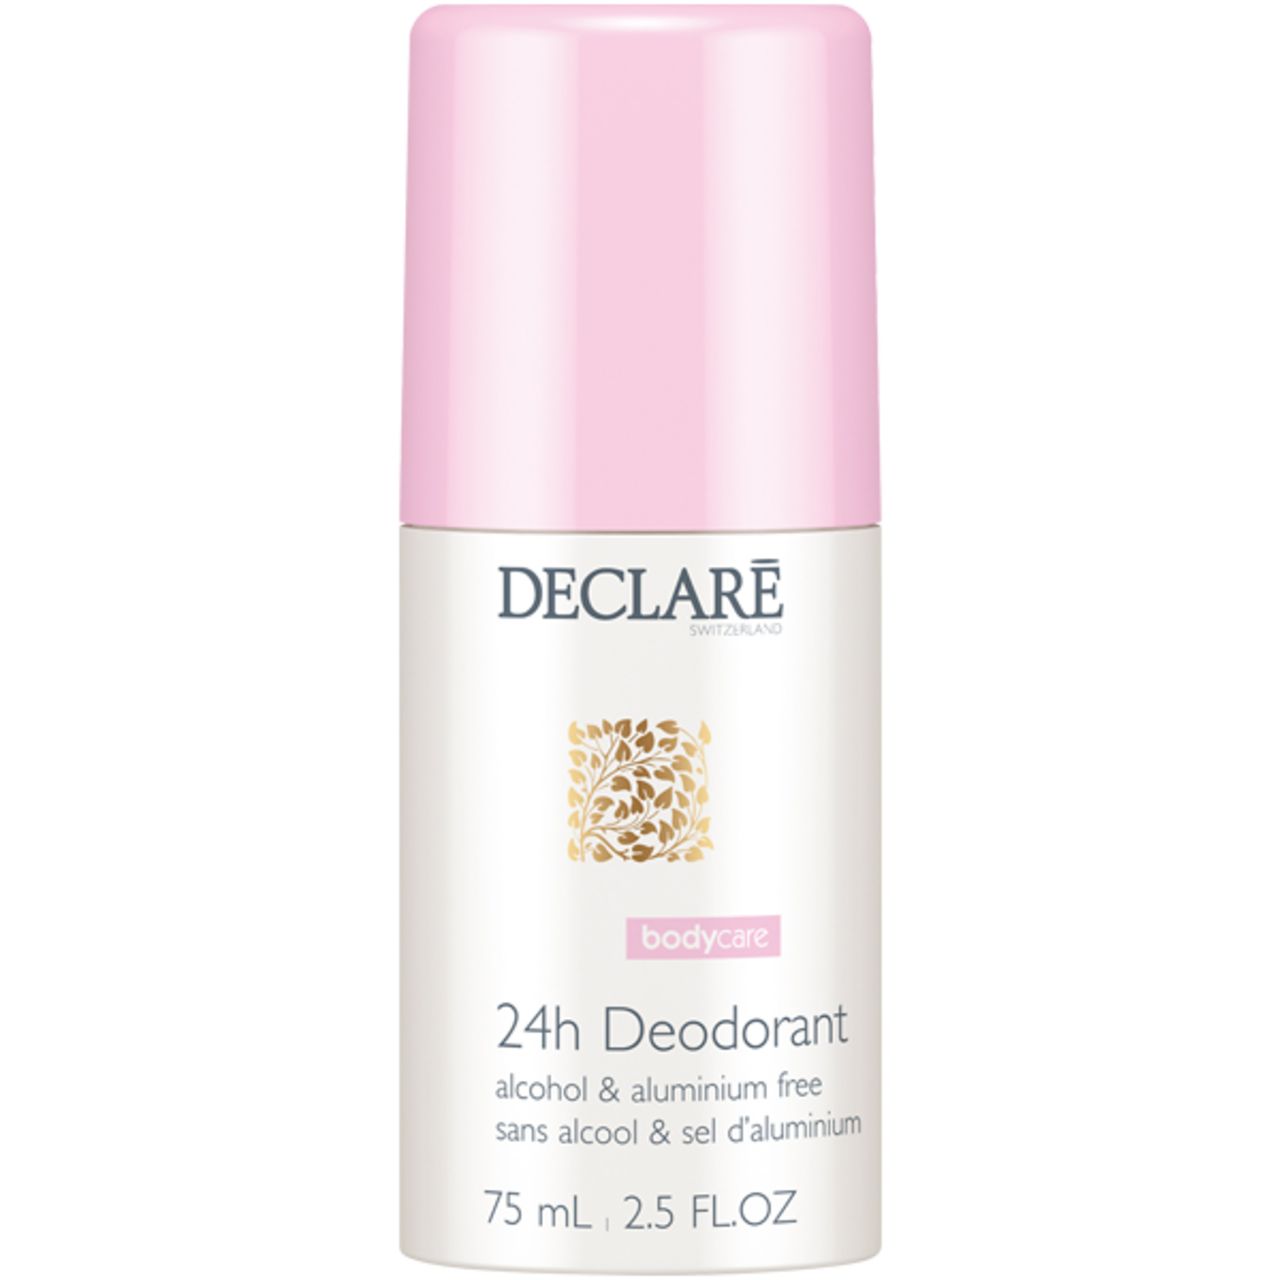 Declare 24h Deodorant